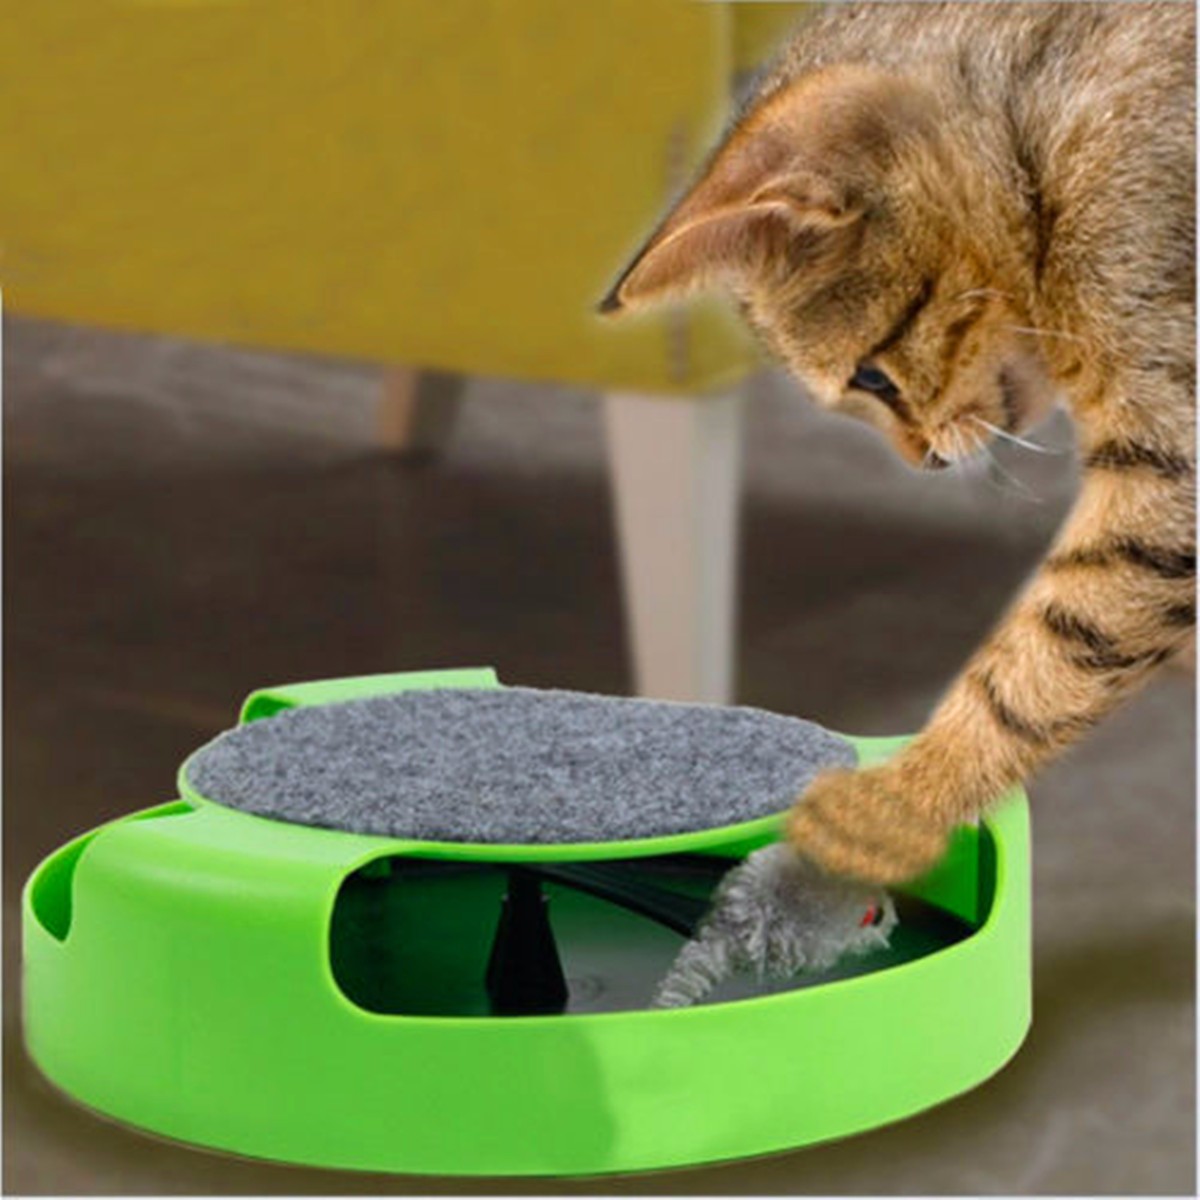 движение котенок кошка игрушка поймать мышь Интерактивные игрушки для кошки смешные faux мыши кота продукта